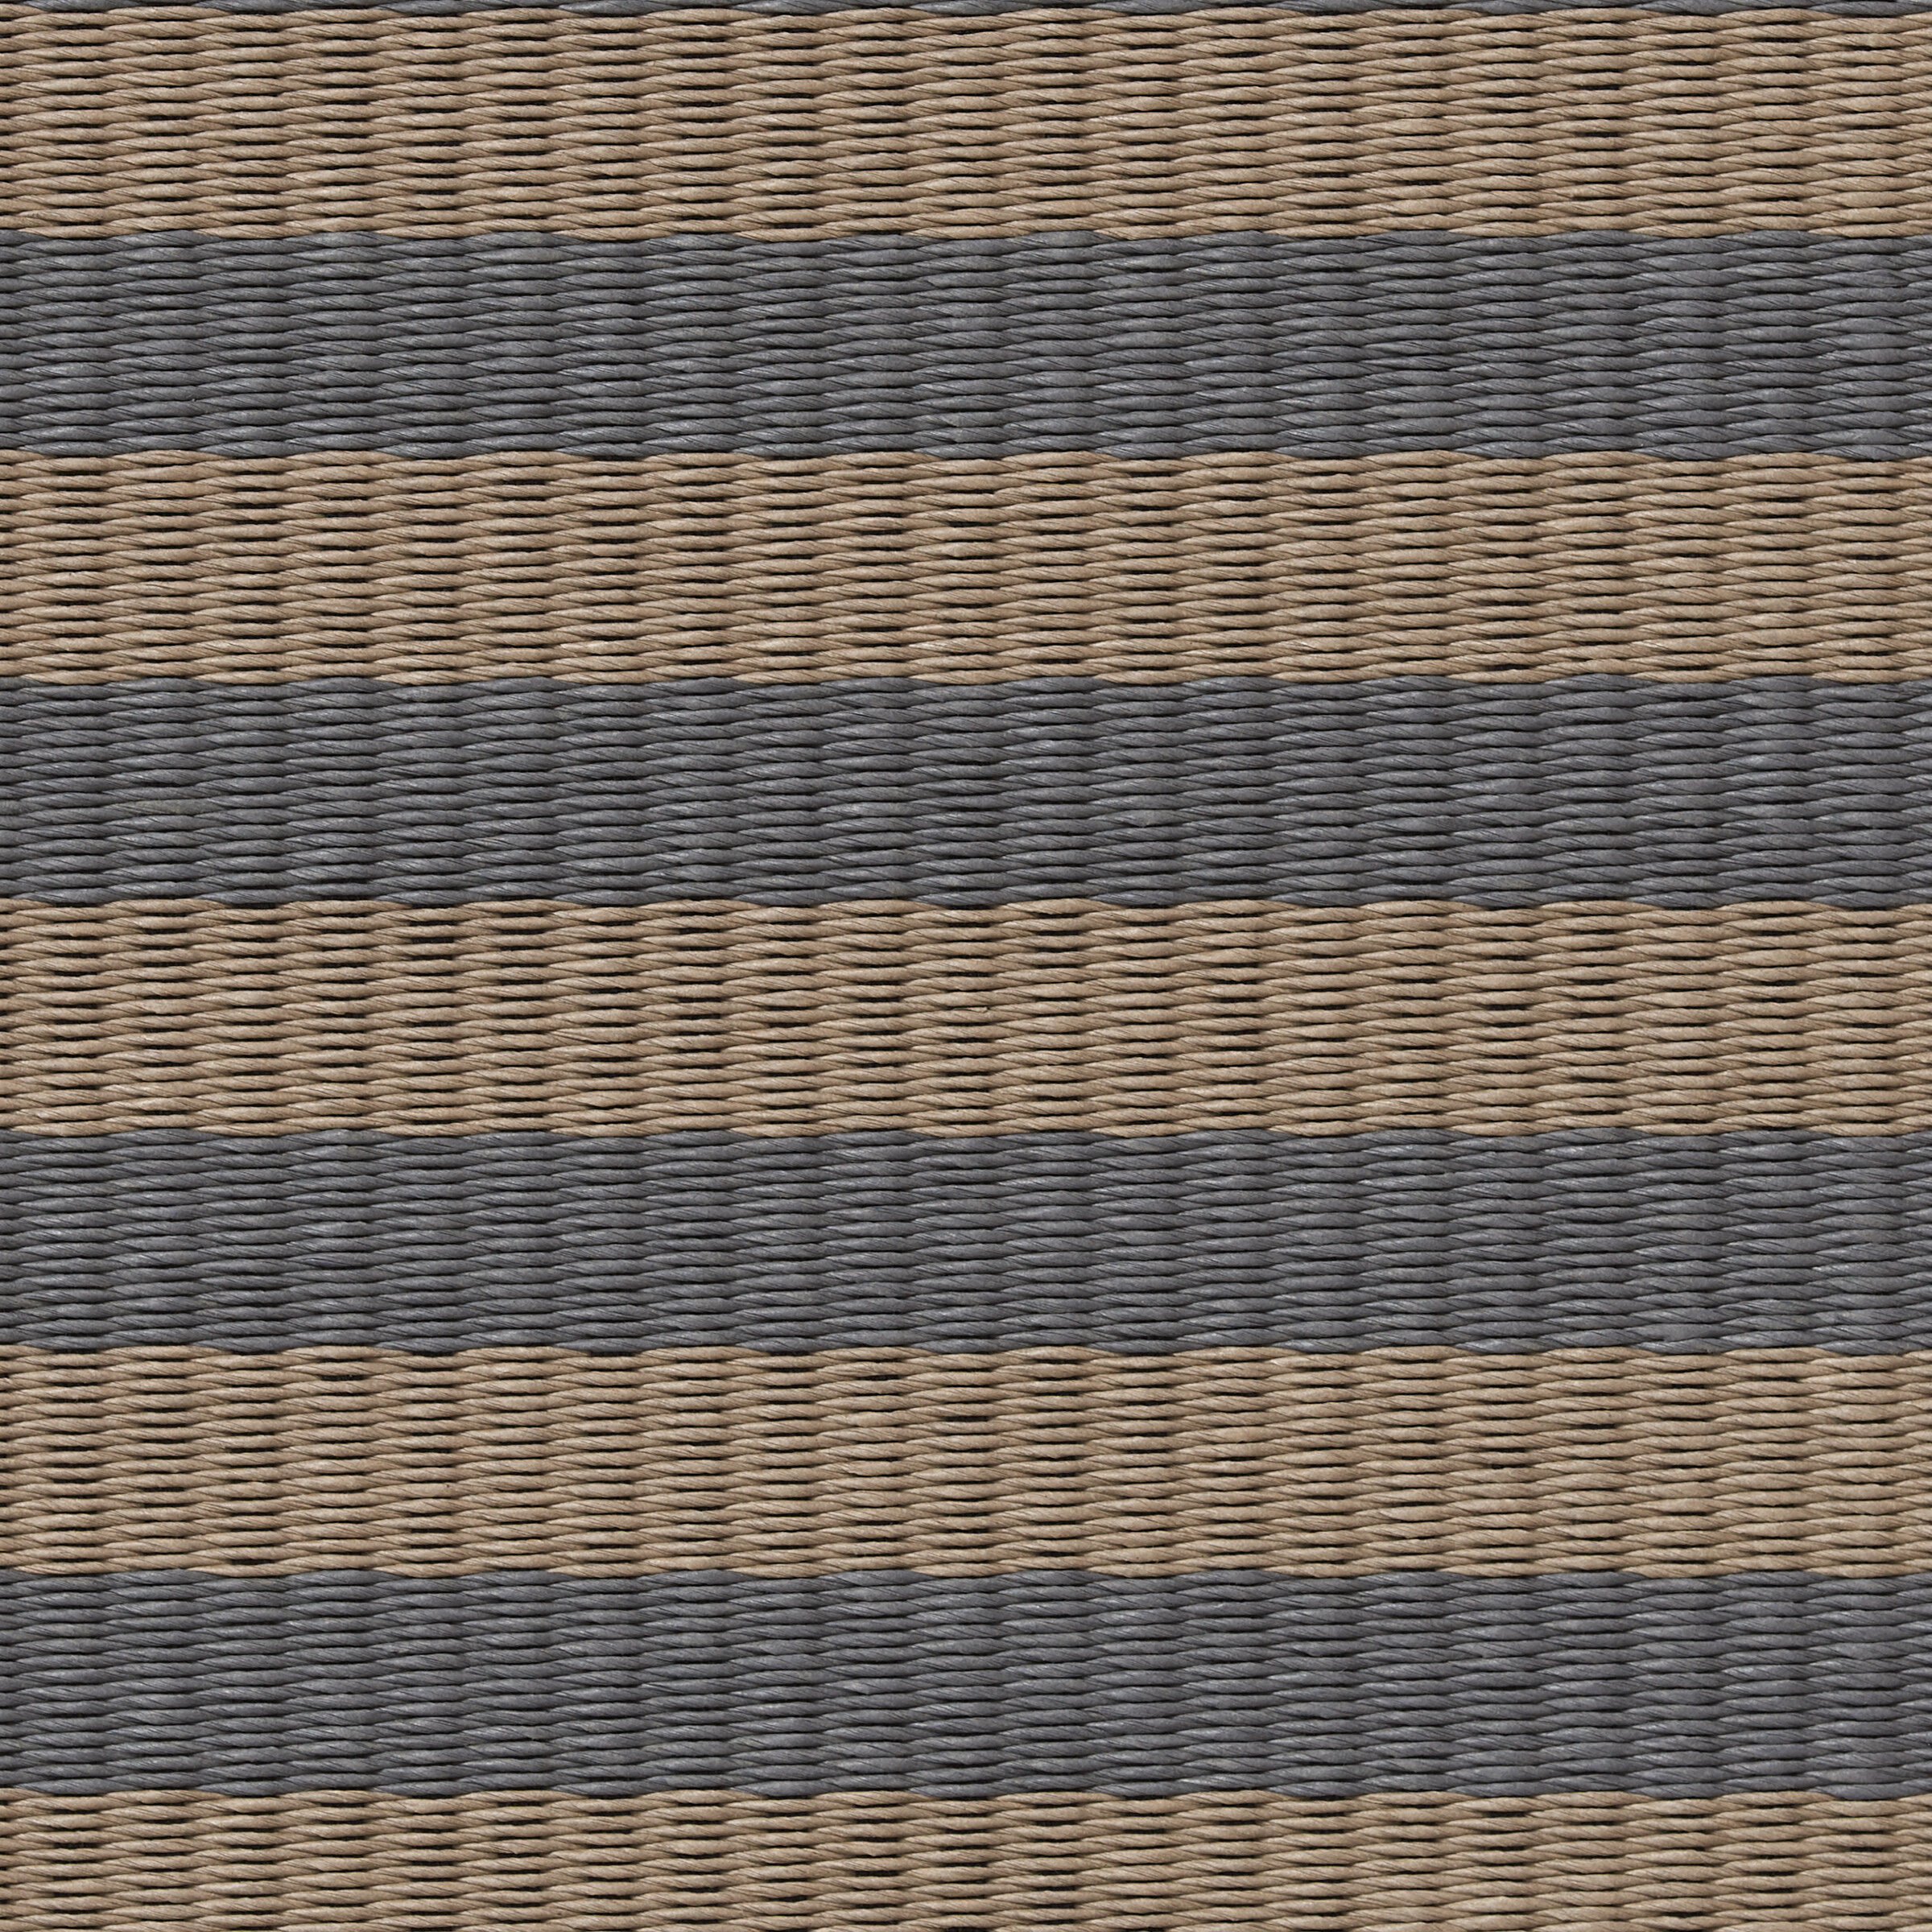 Design Stripe Colour nutria-graphite